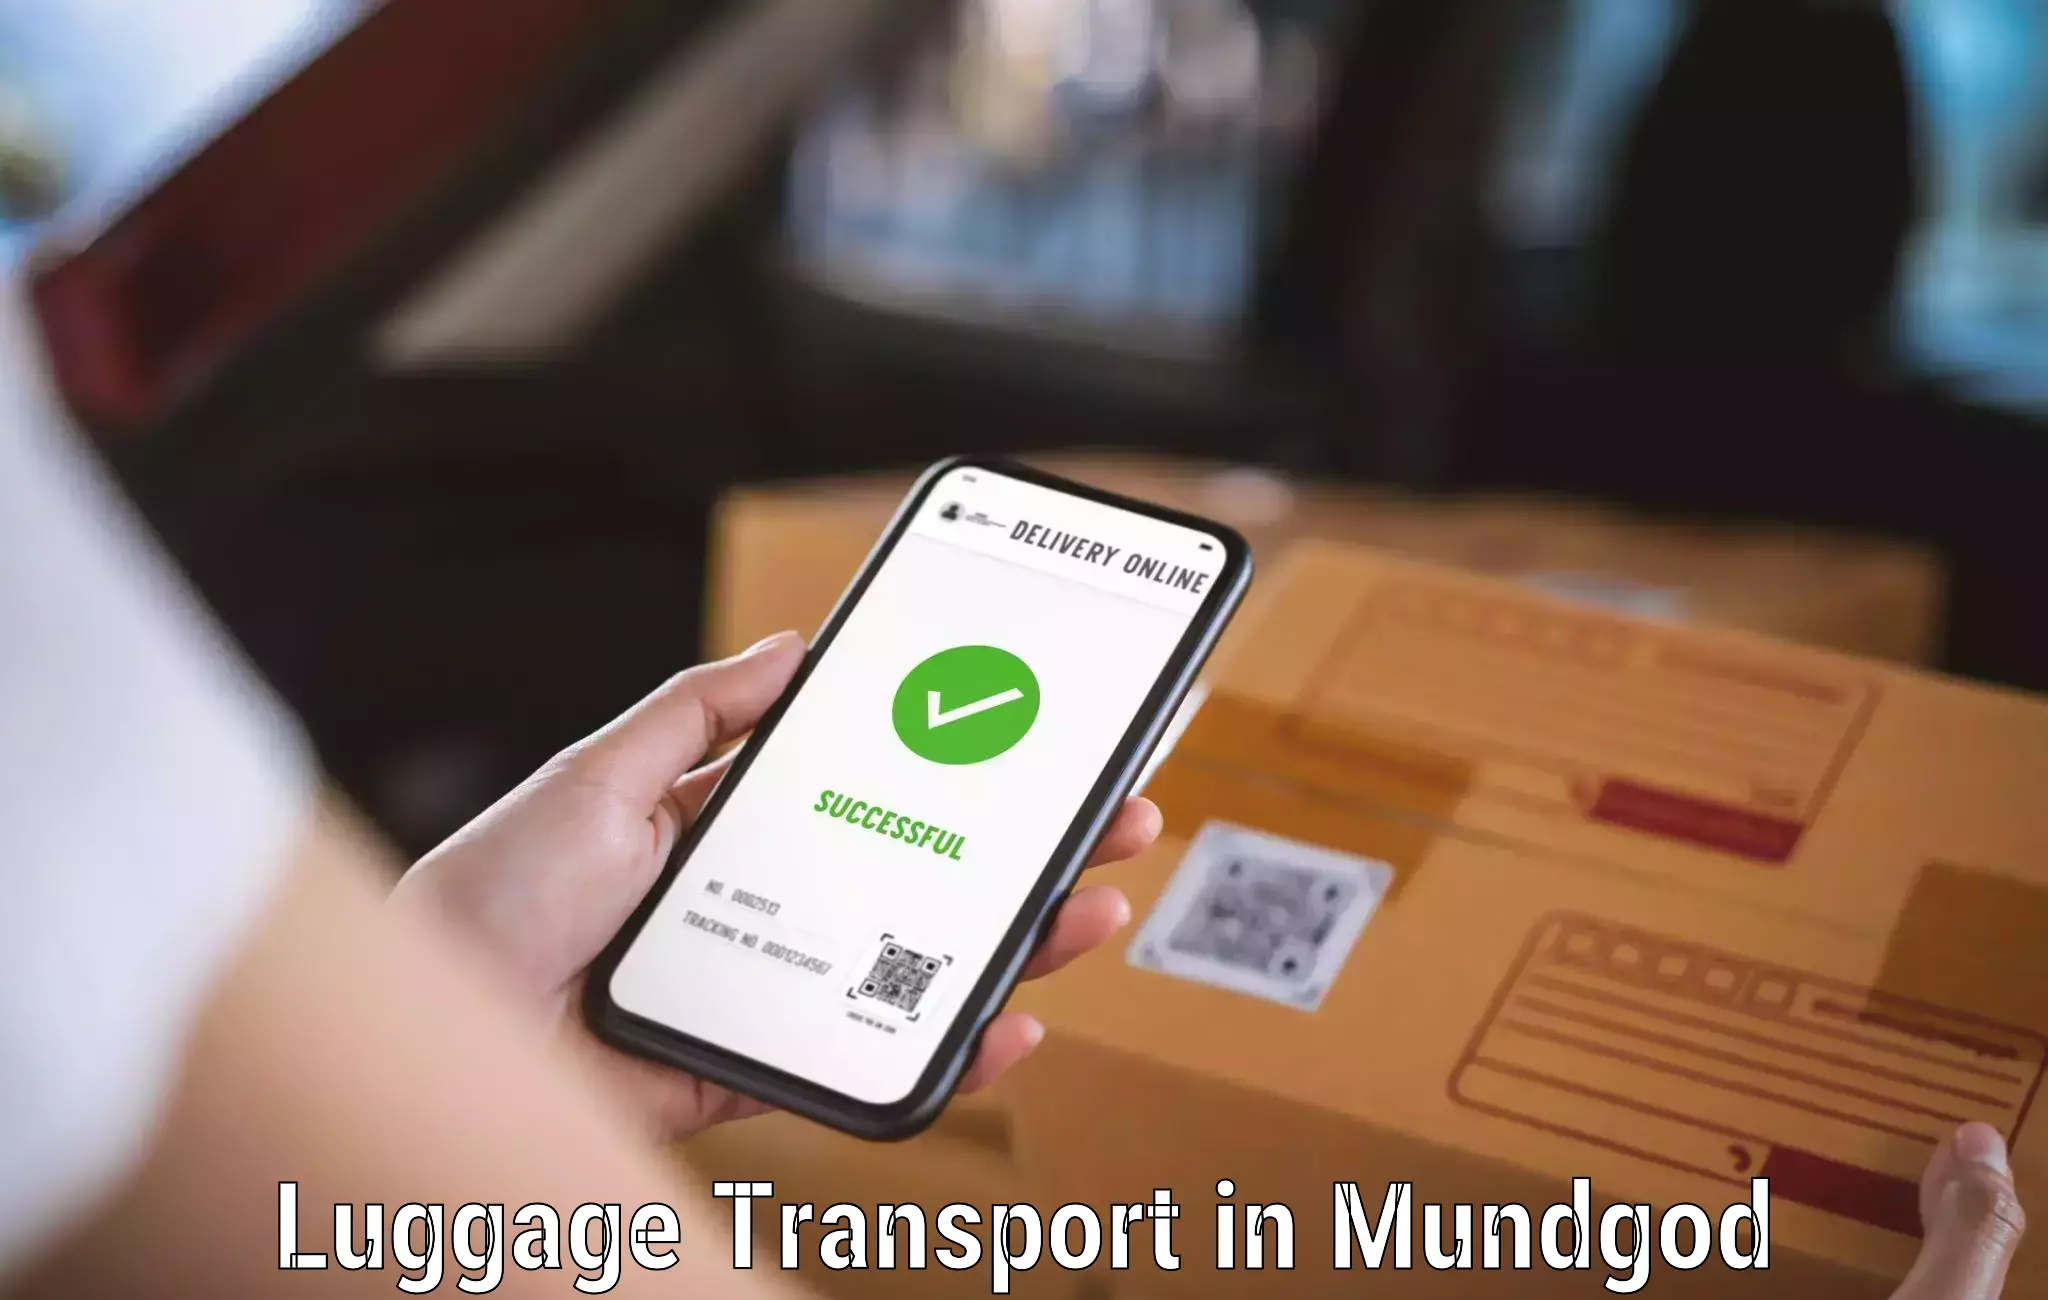 Luggage shipping service in Mundgod